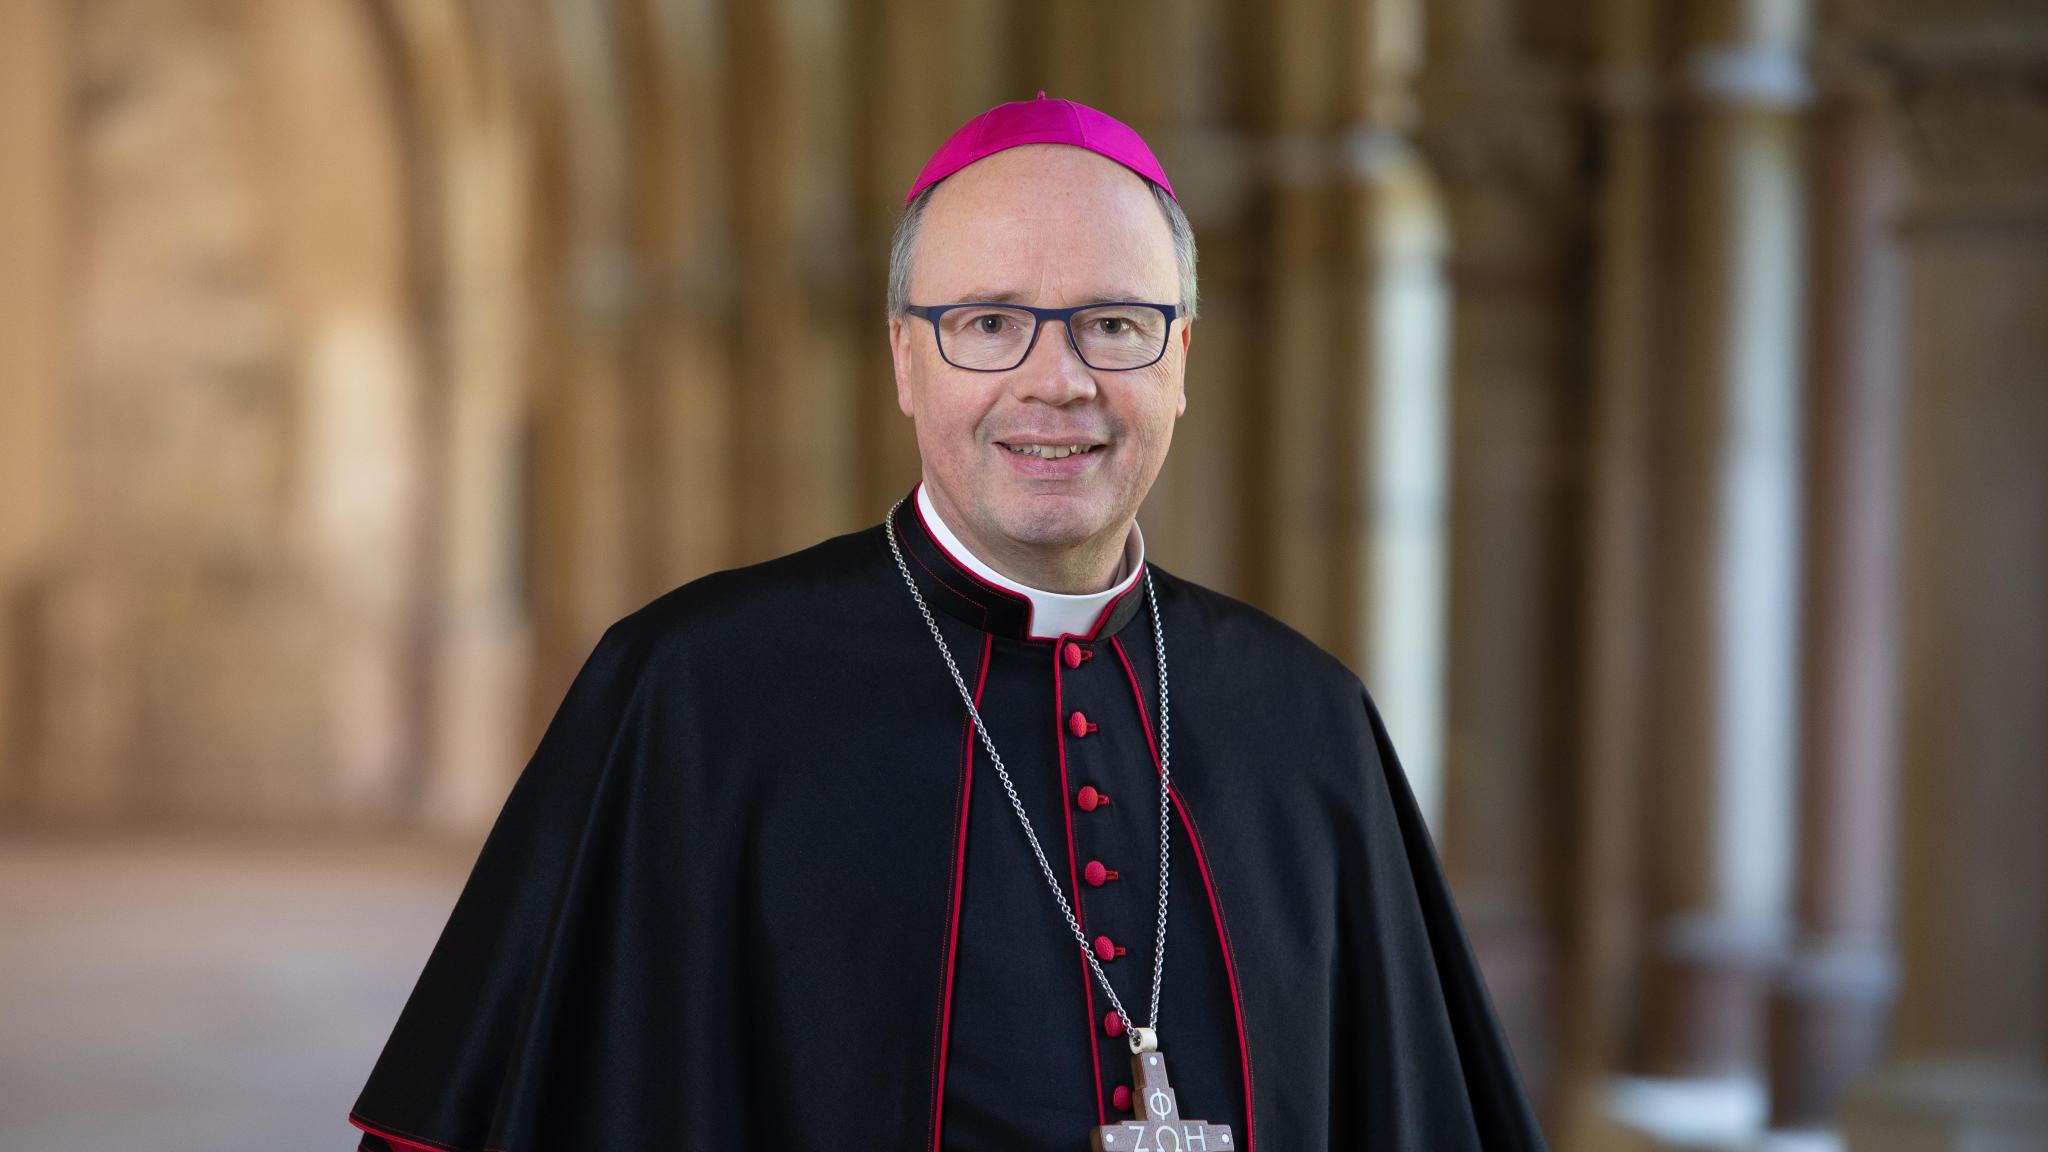 Hier ist ein Portrait von Bischof Ackermann, lächelnd im Kreuzgang zu sehen. Er Trägt ein Ornat.